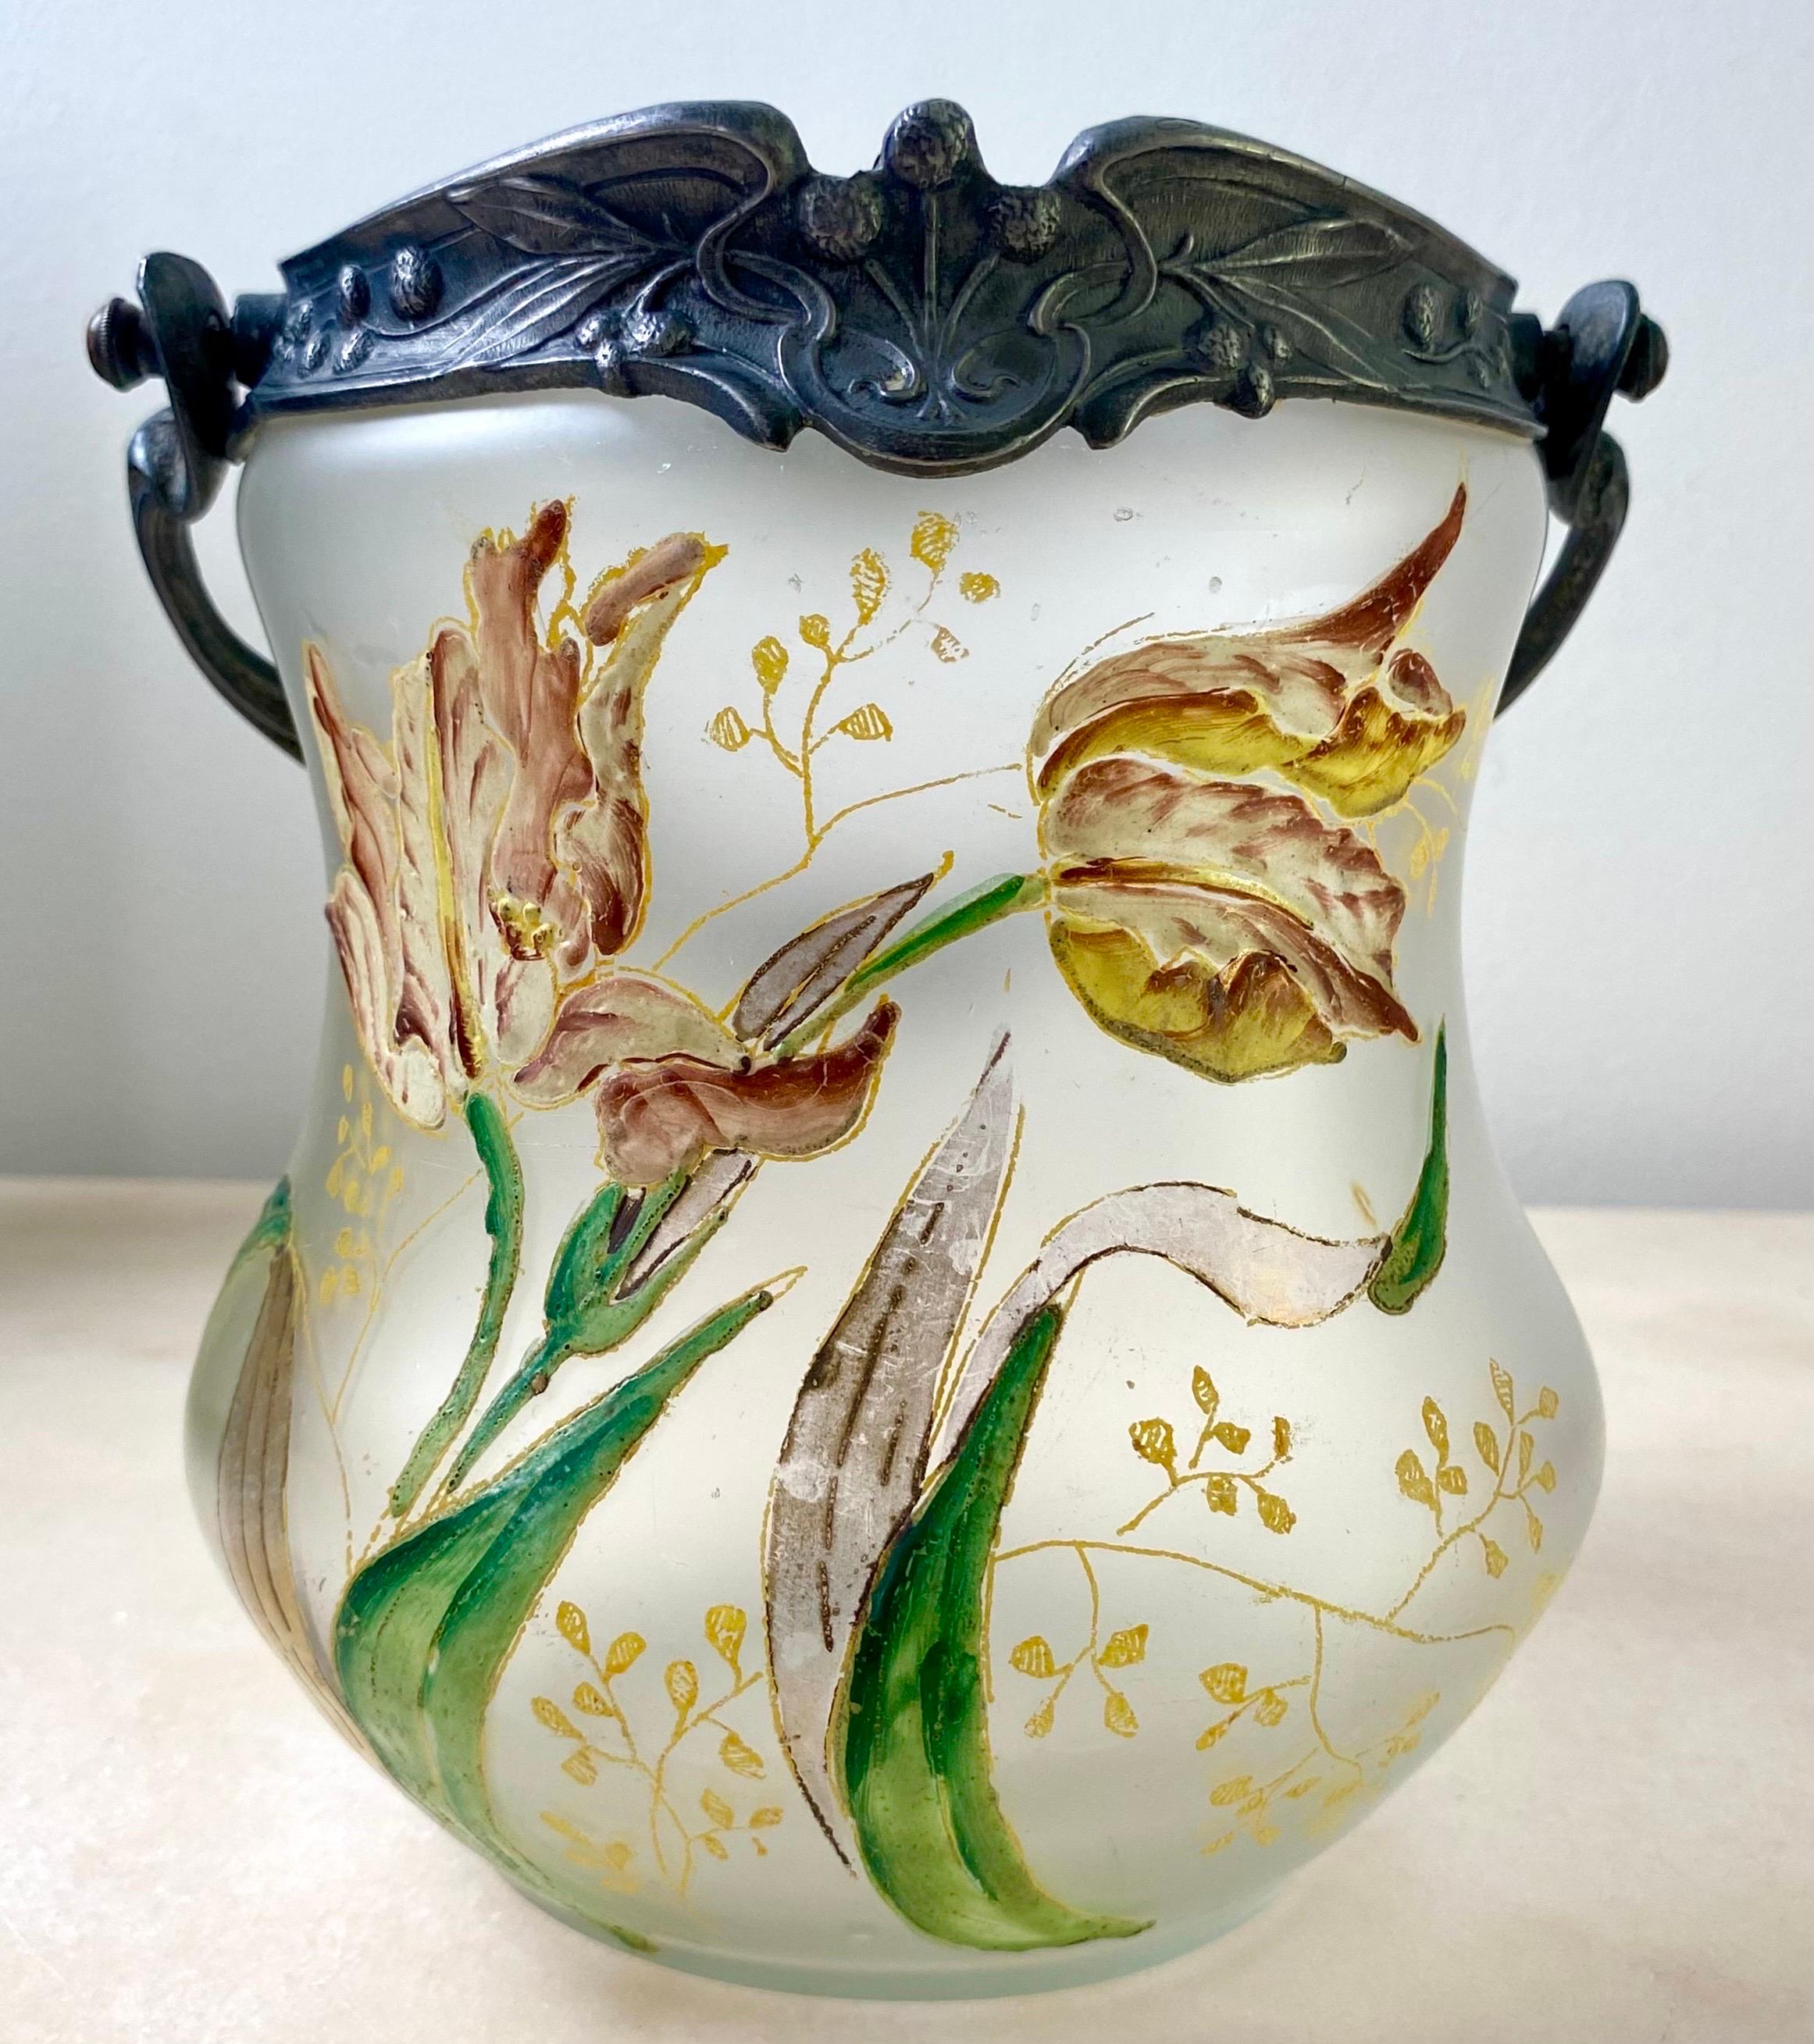 Hervorragende Vase in Form eines etruskischen Eimers oder Topfes aus der Zeit des Jugendstils. Um 1880.
Französische Arbeiten im Stil der berühmten Glas- und Kristallwerkstätten von Legras.

Dieser hübsche Kekseimer ist aus wunderschönem Glas